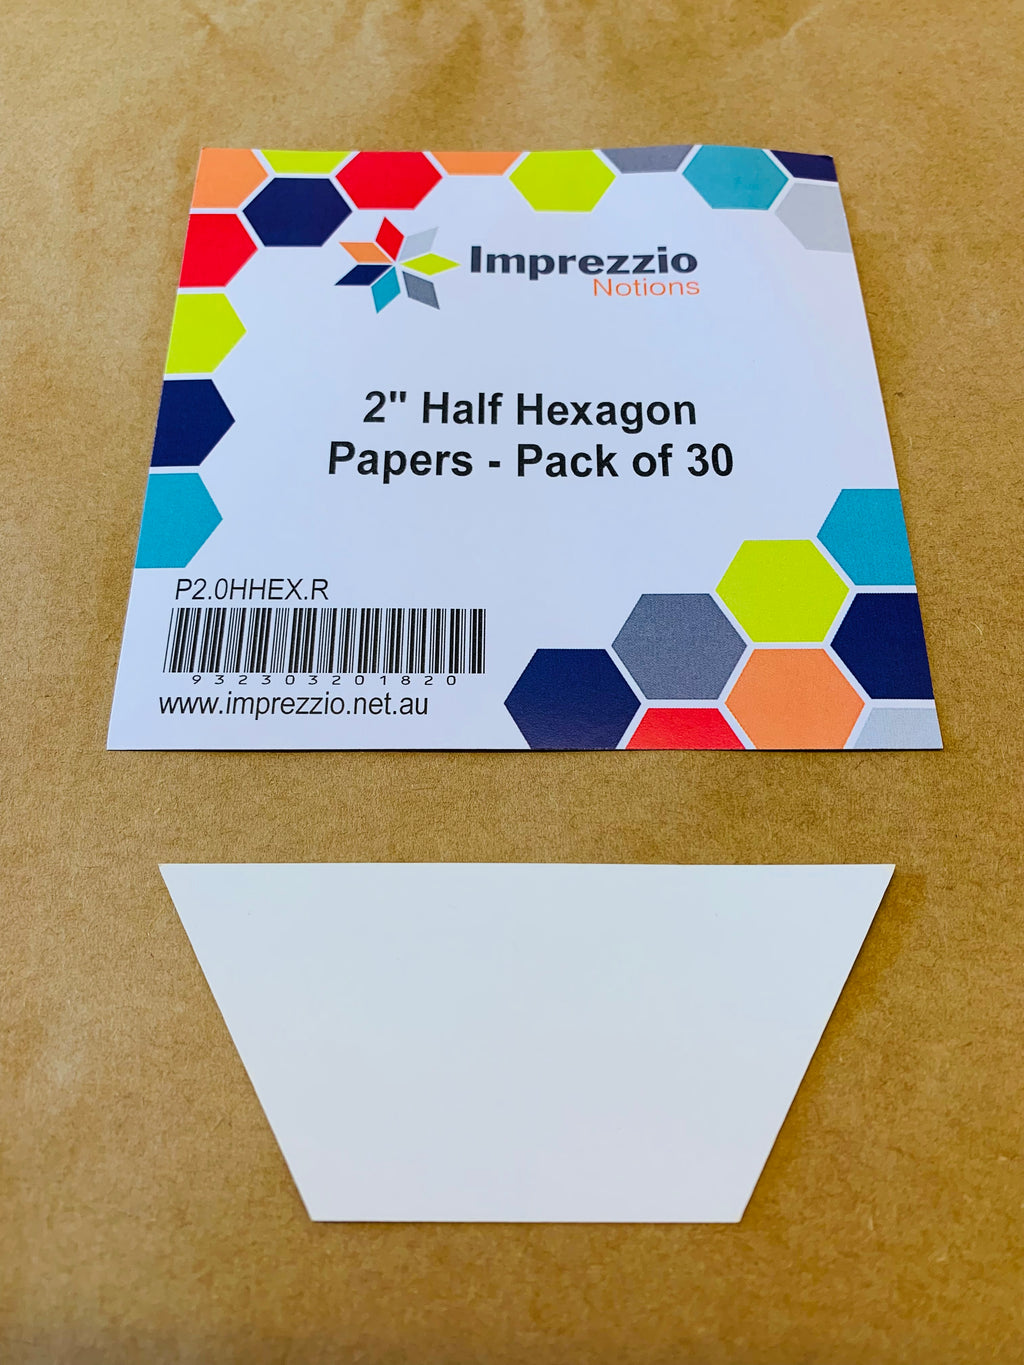 2” Half Hexagon Papers